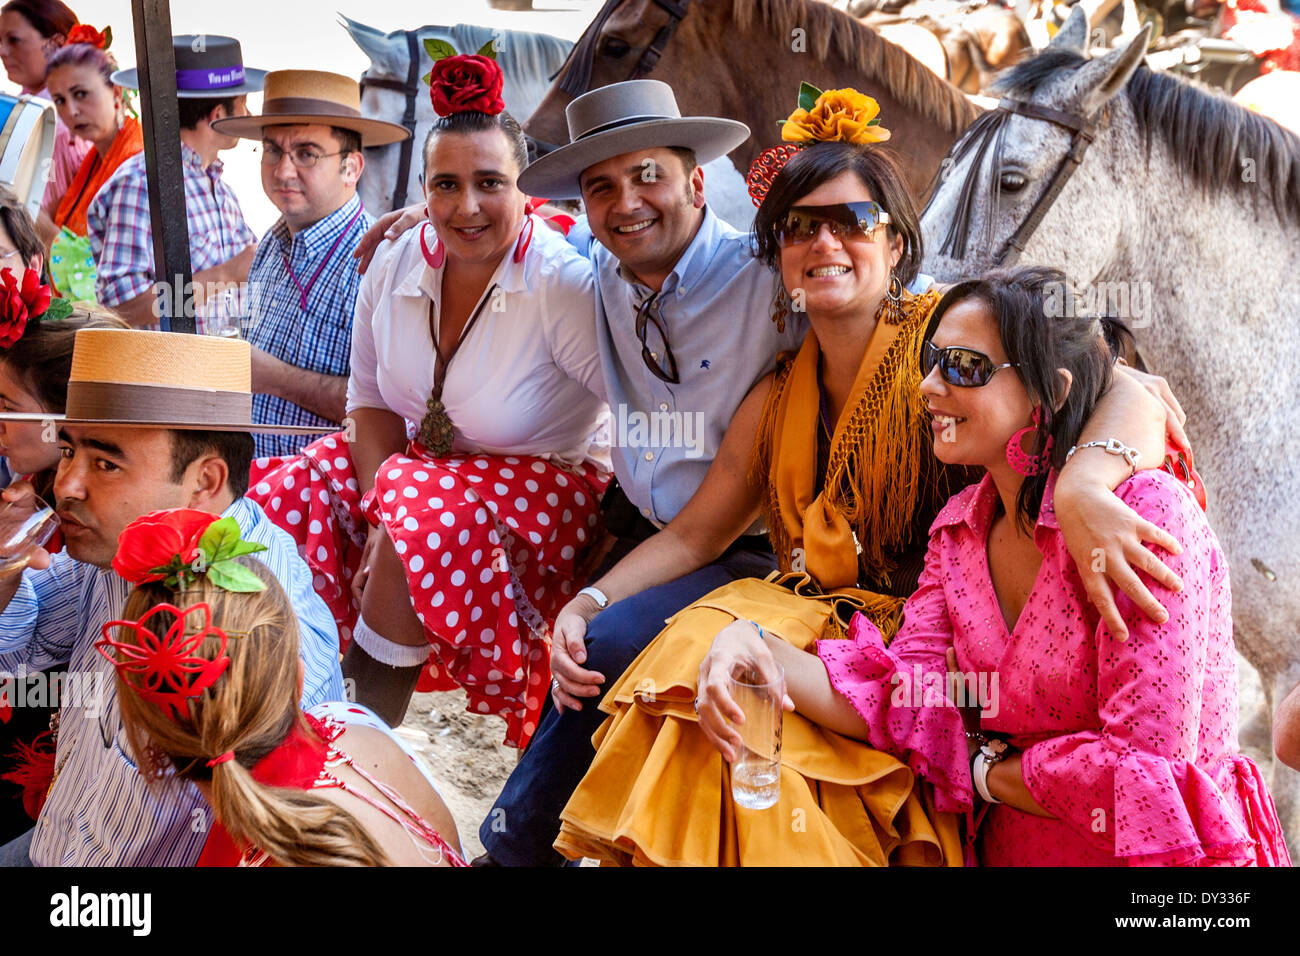 People In Traditional Costume, El Rocio Festival, El Rocio Stock Photo ...